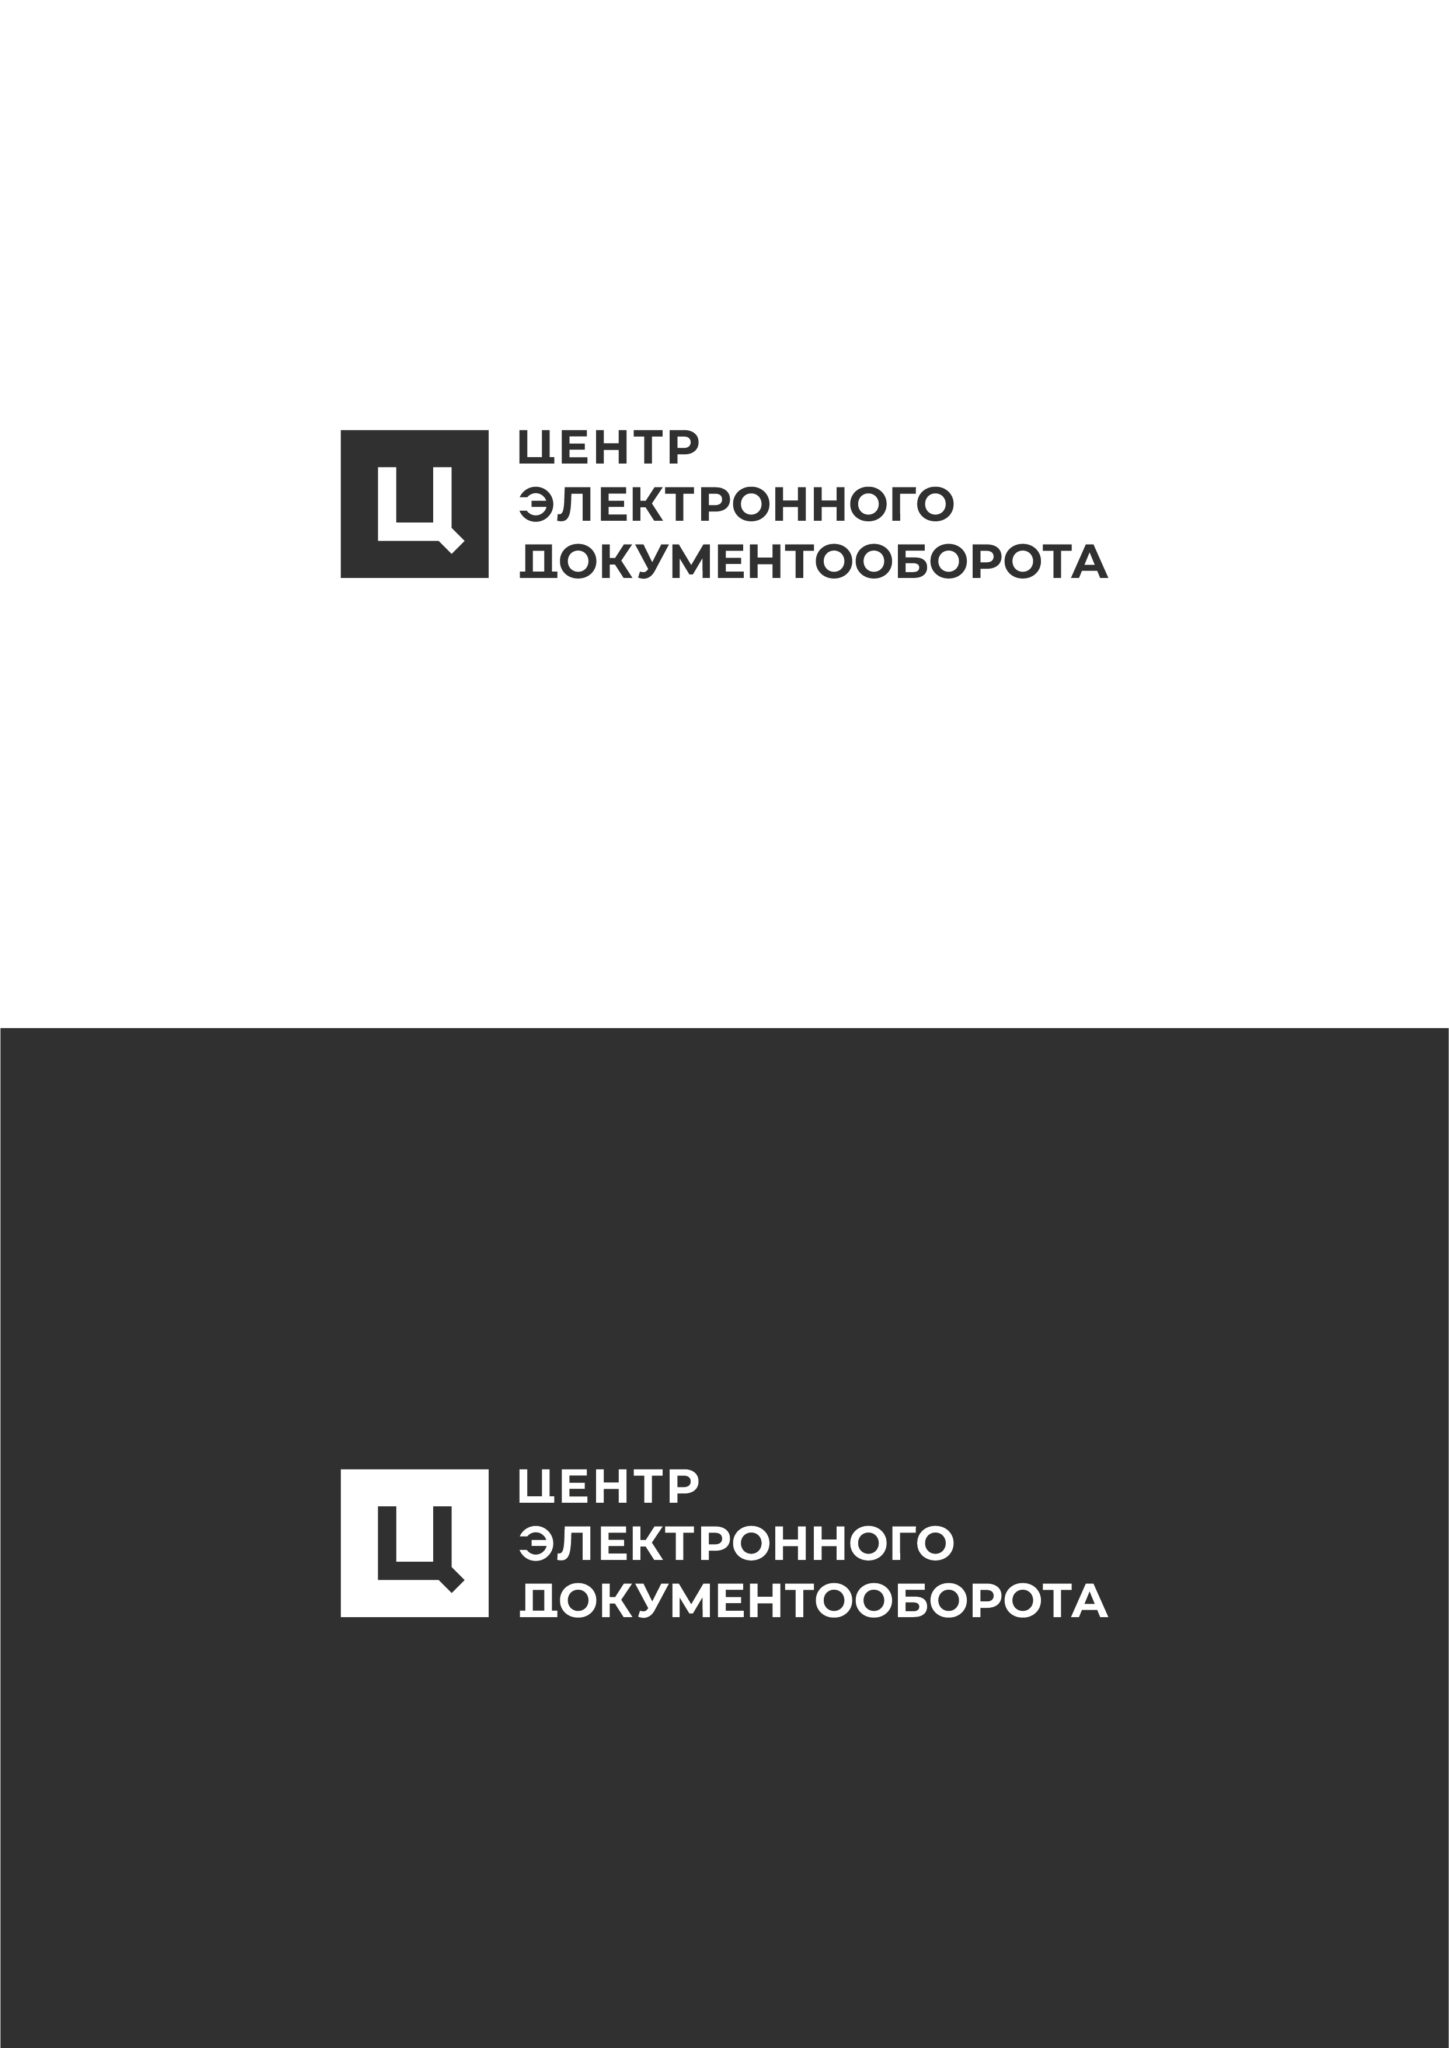 Заказать Разработку Логотипа Компании